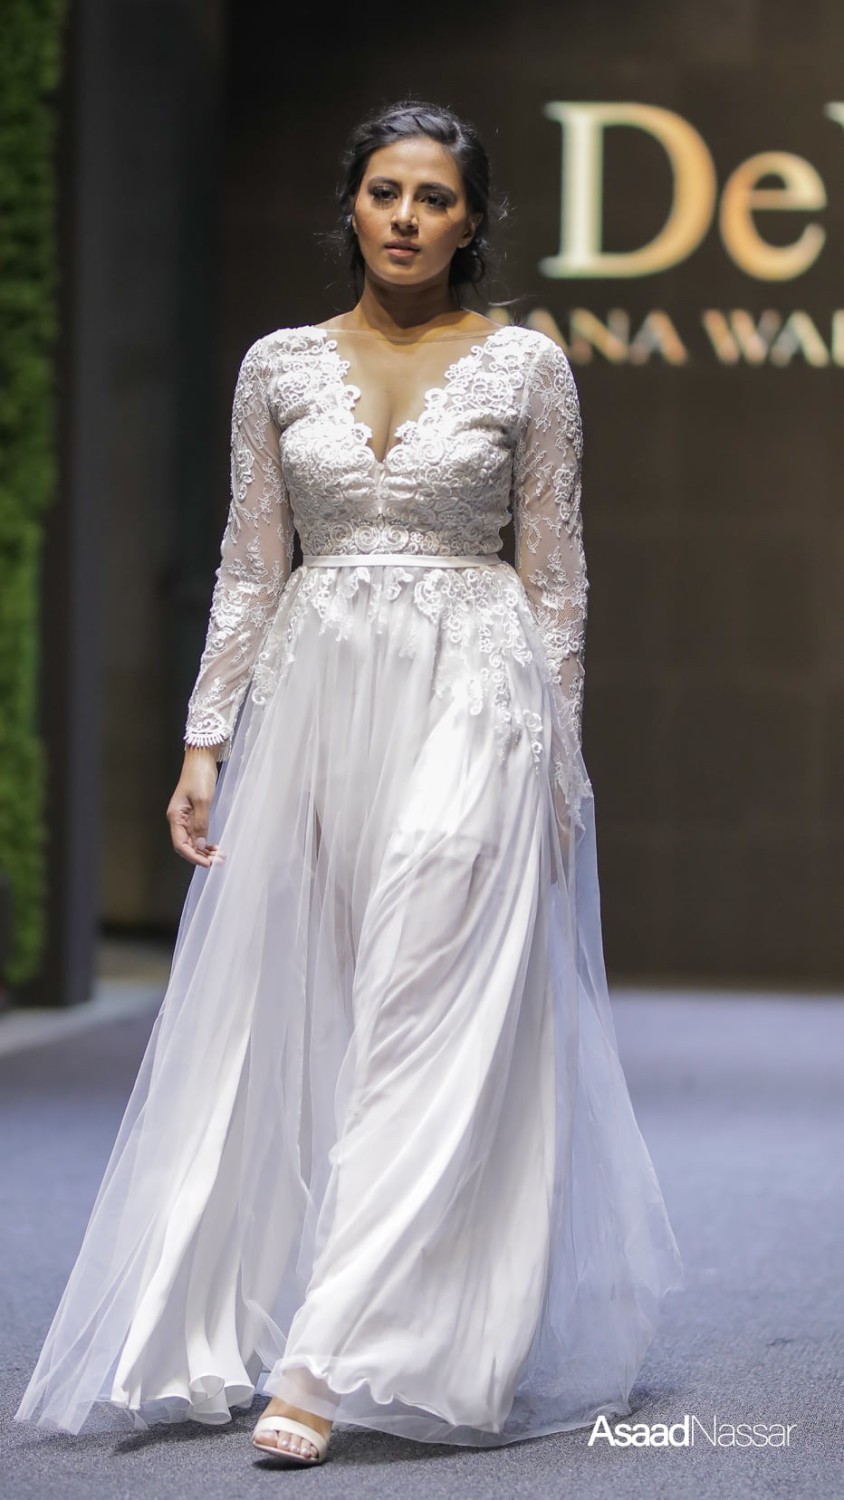 Najnowsze kolekcje sukien ślubnych Diany Walkiewicz, znanej radomskiej projektantki mody - zobacz zdjęcia